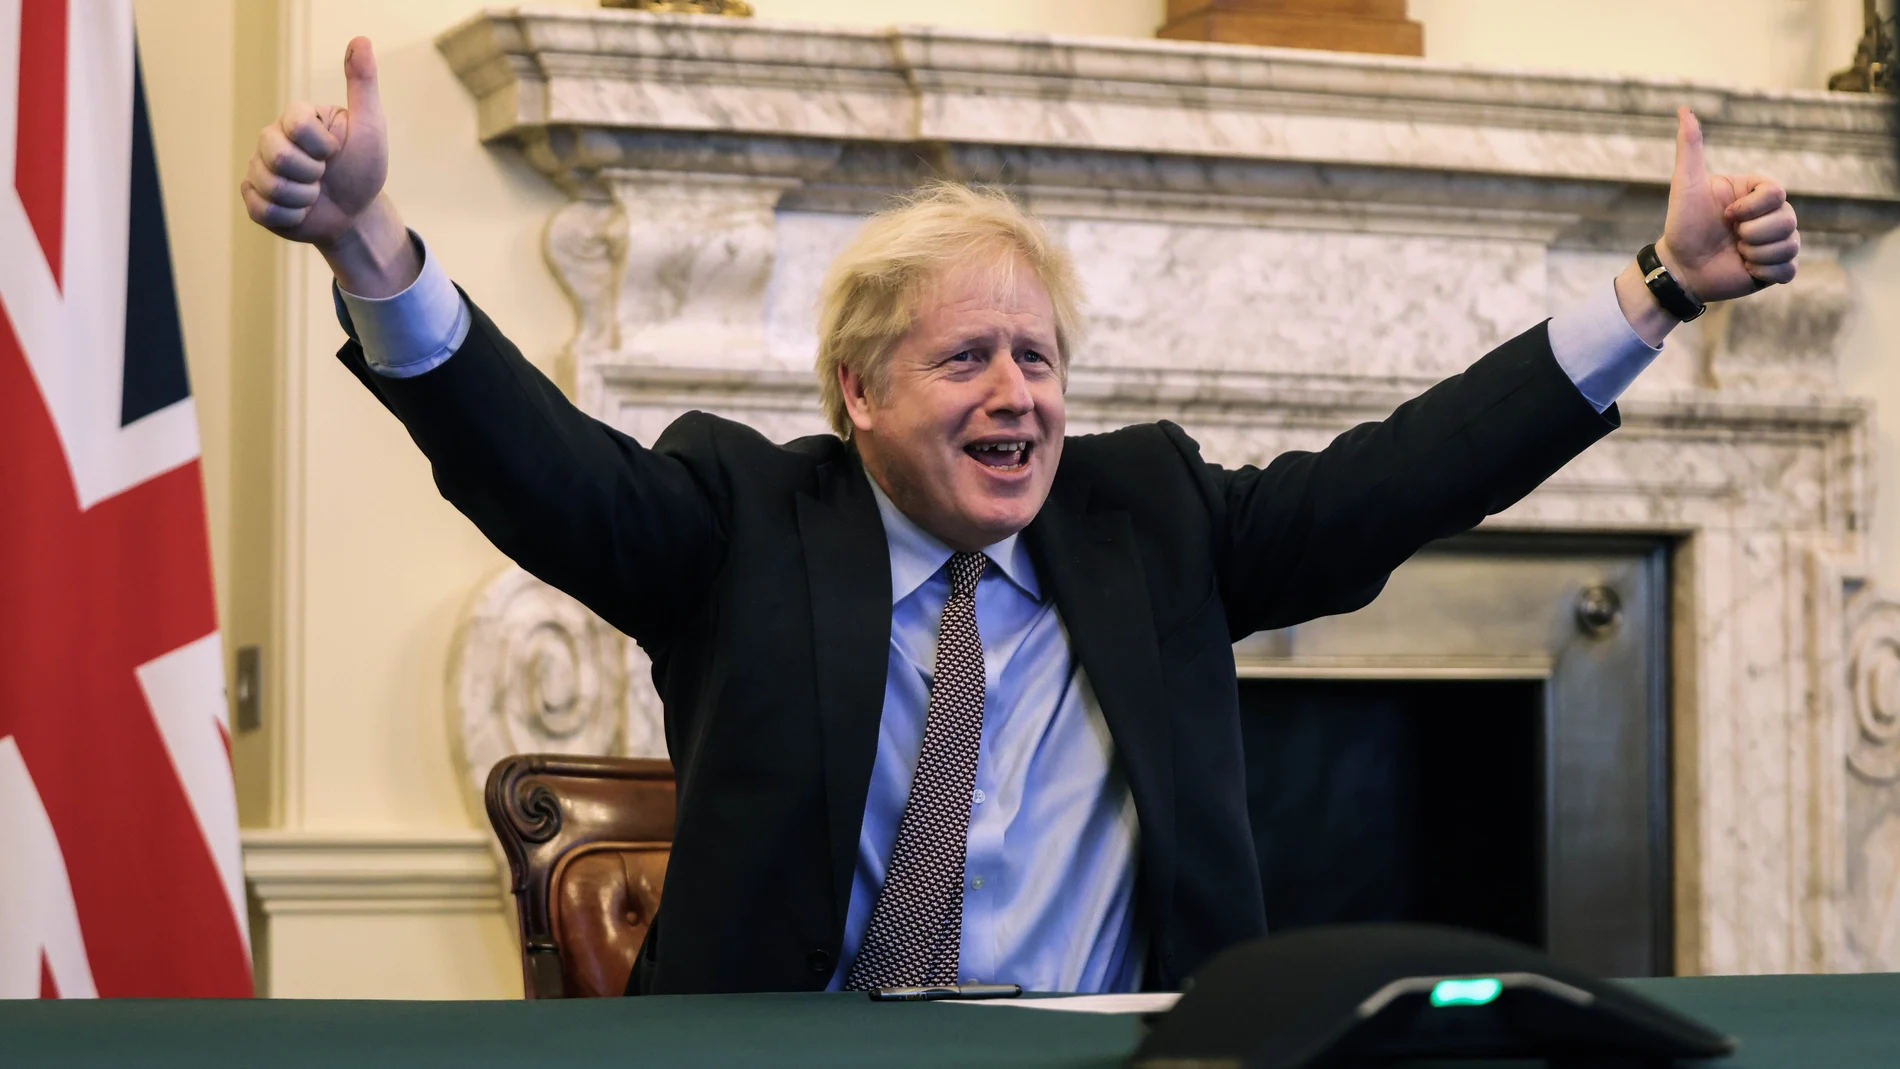 El "premier" Boris Johnson considera cumplida su promesa de "recuperar el control" de la soberanía británica